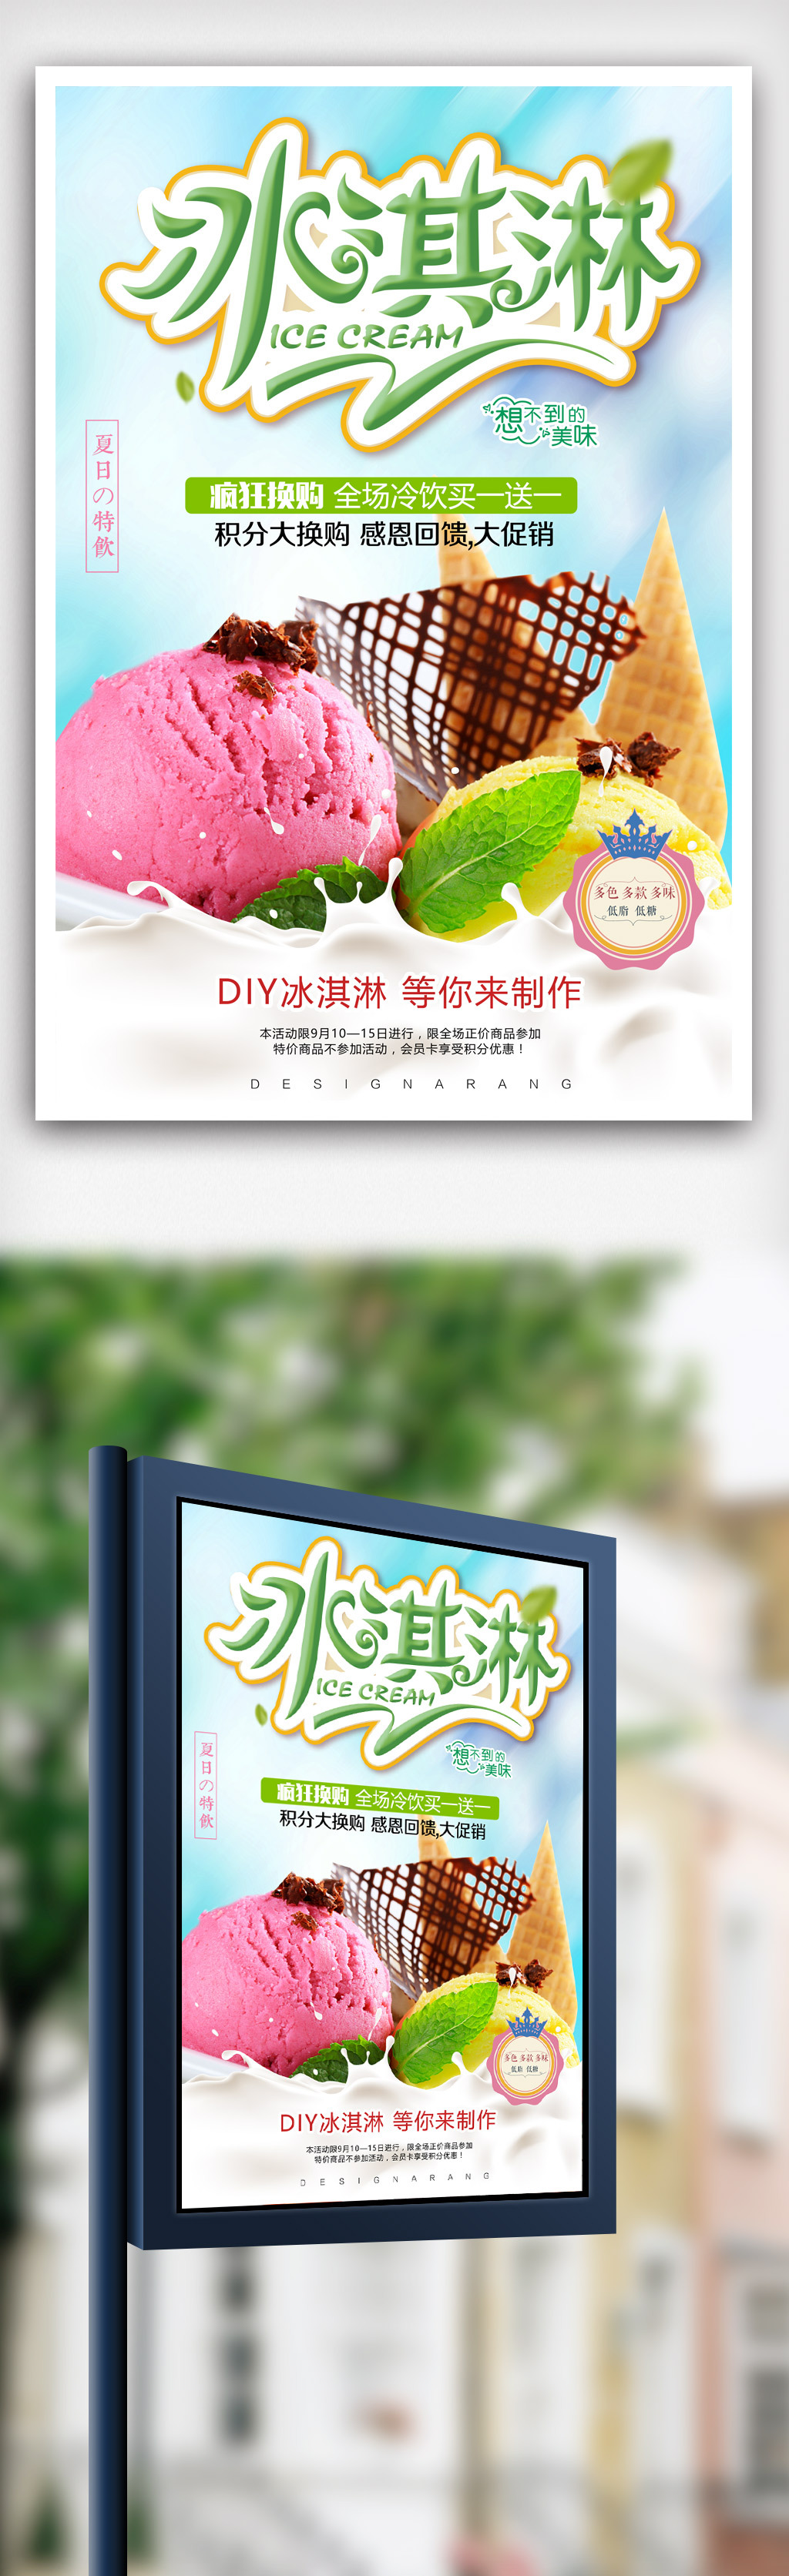 夏日小清新冰淇淋甜品促销海报.psd图片